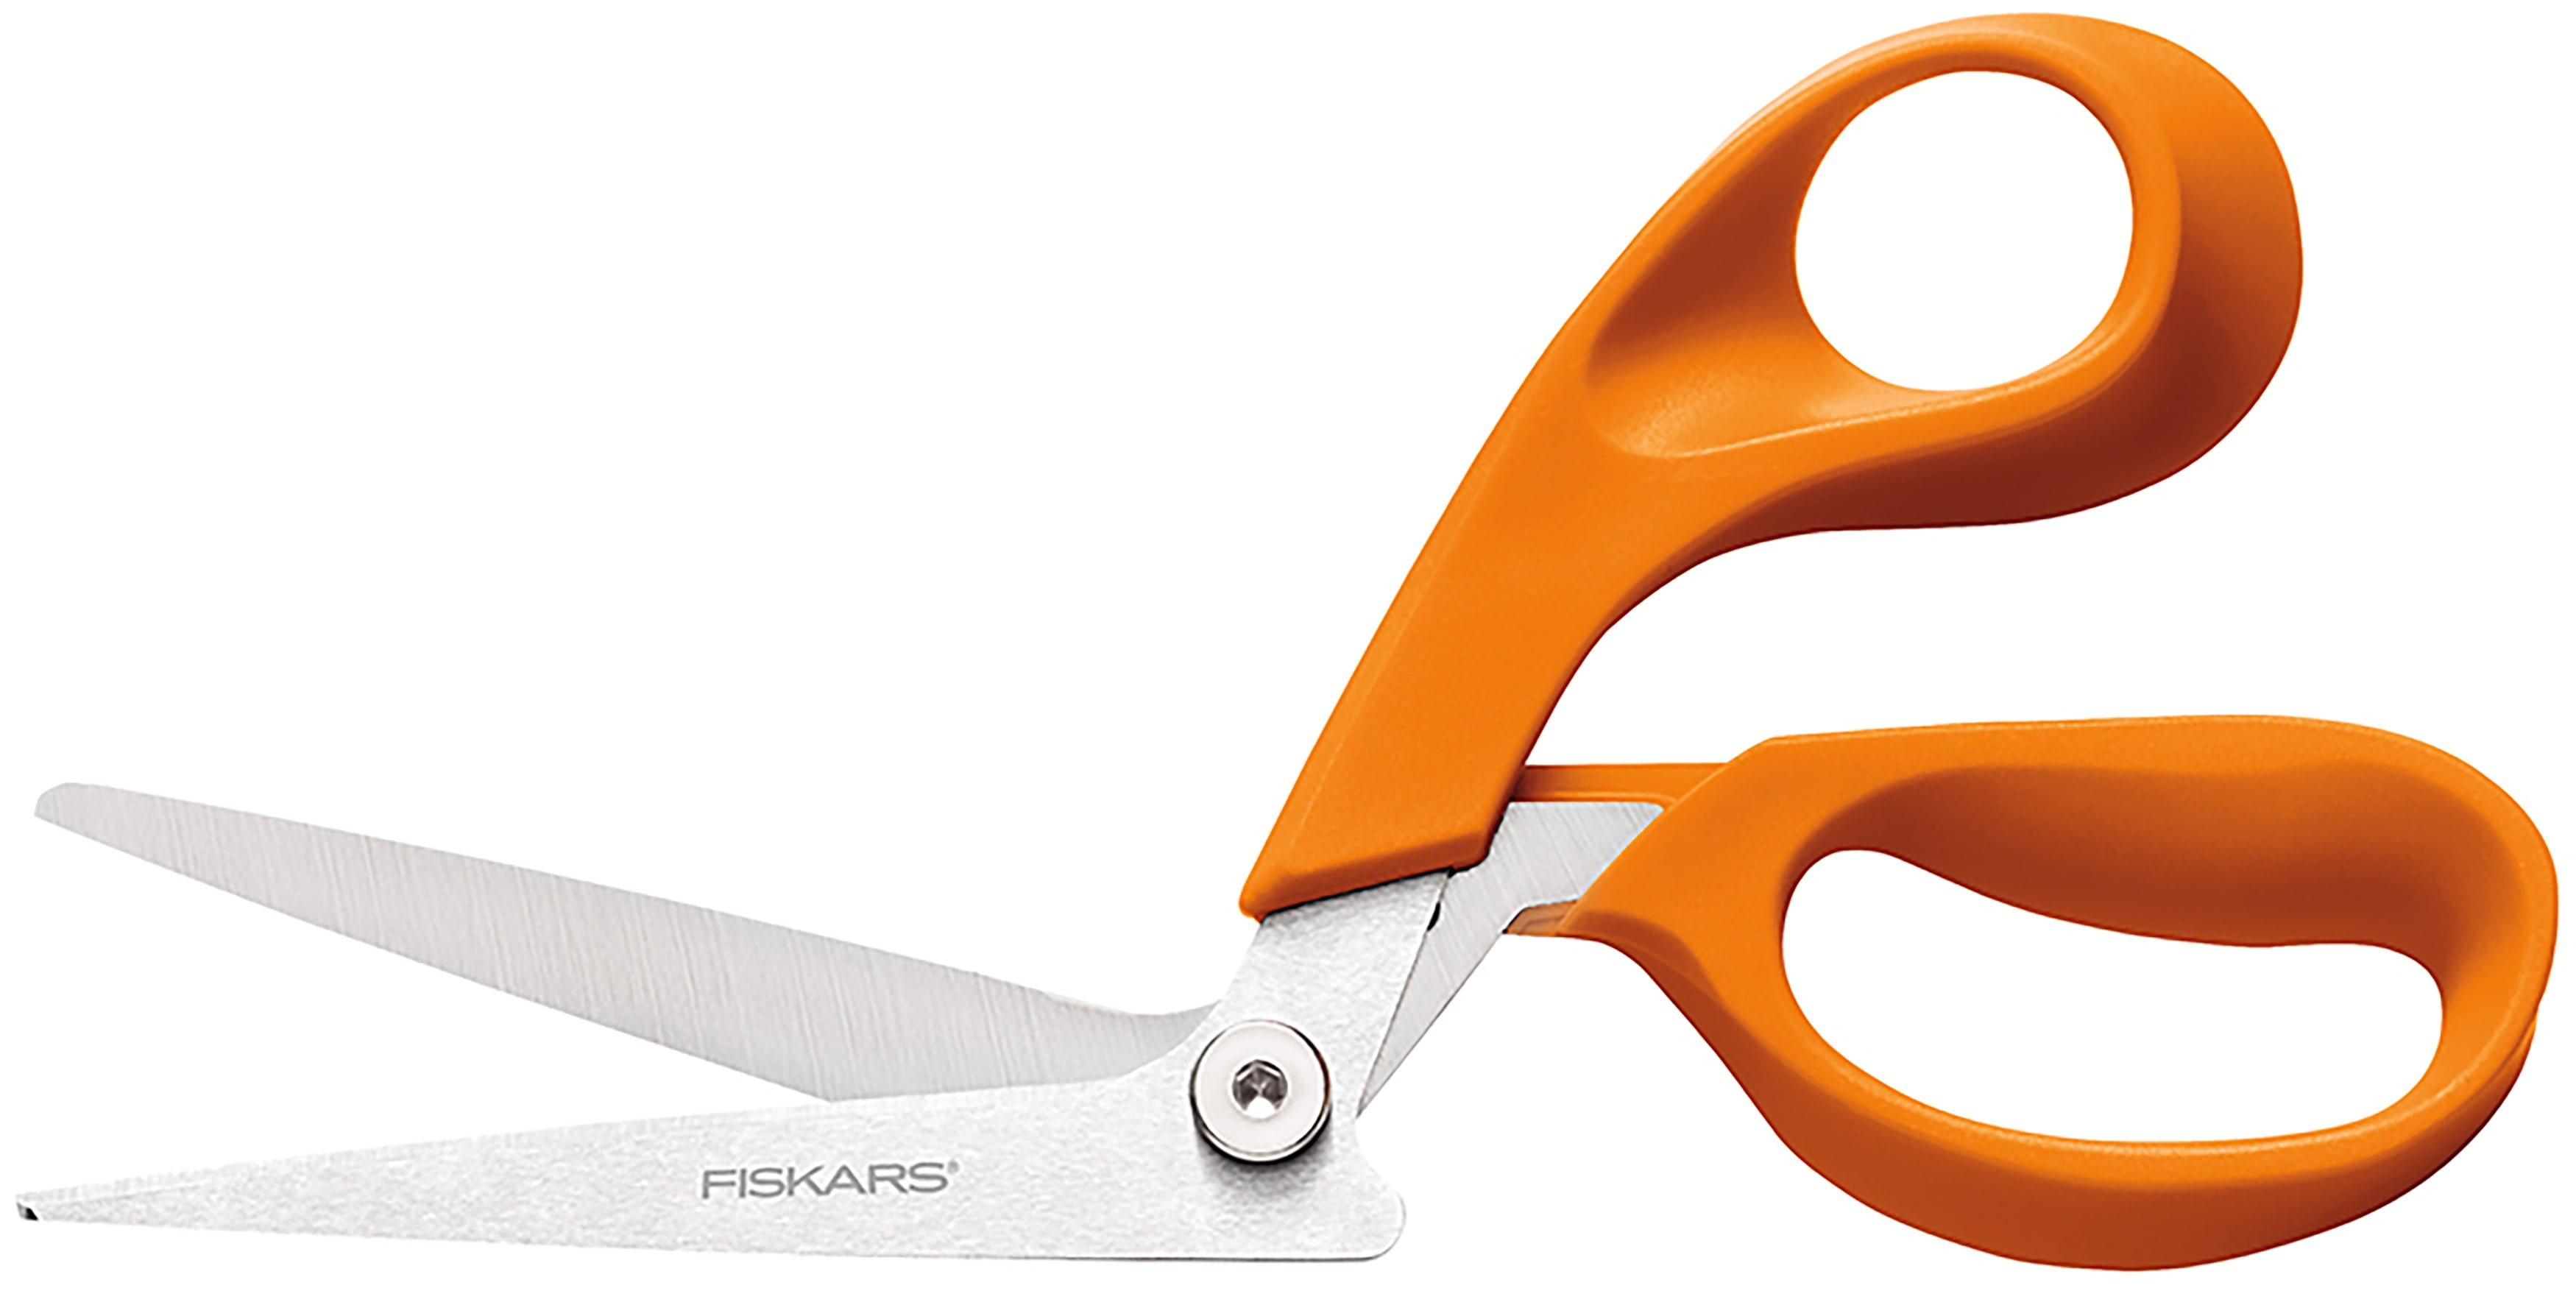 Fiskars Redefines Fabric Cutting Essentials - Fiskars Brands, Inc.